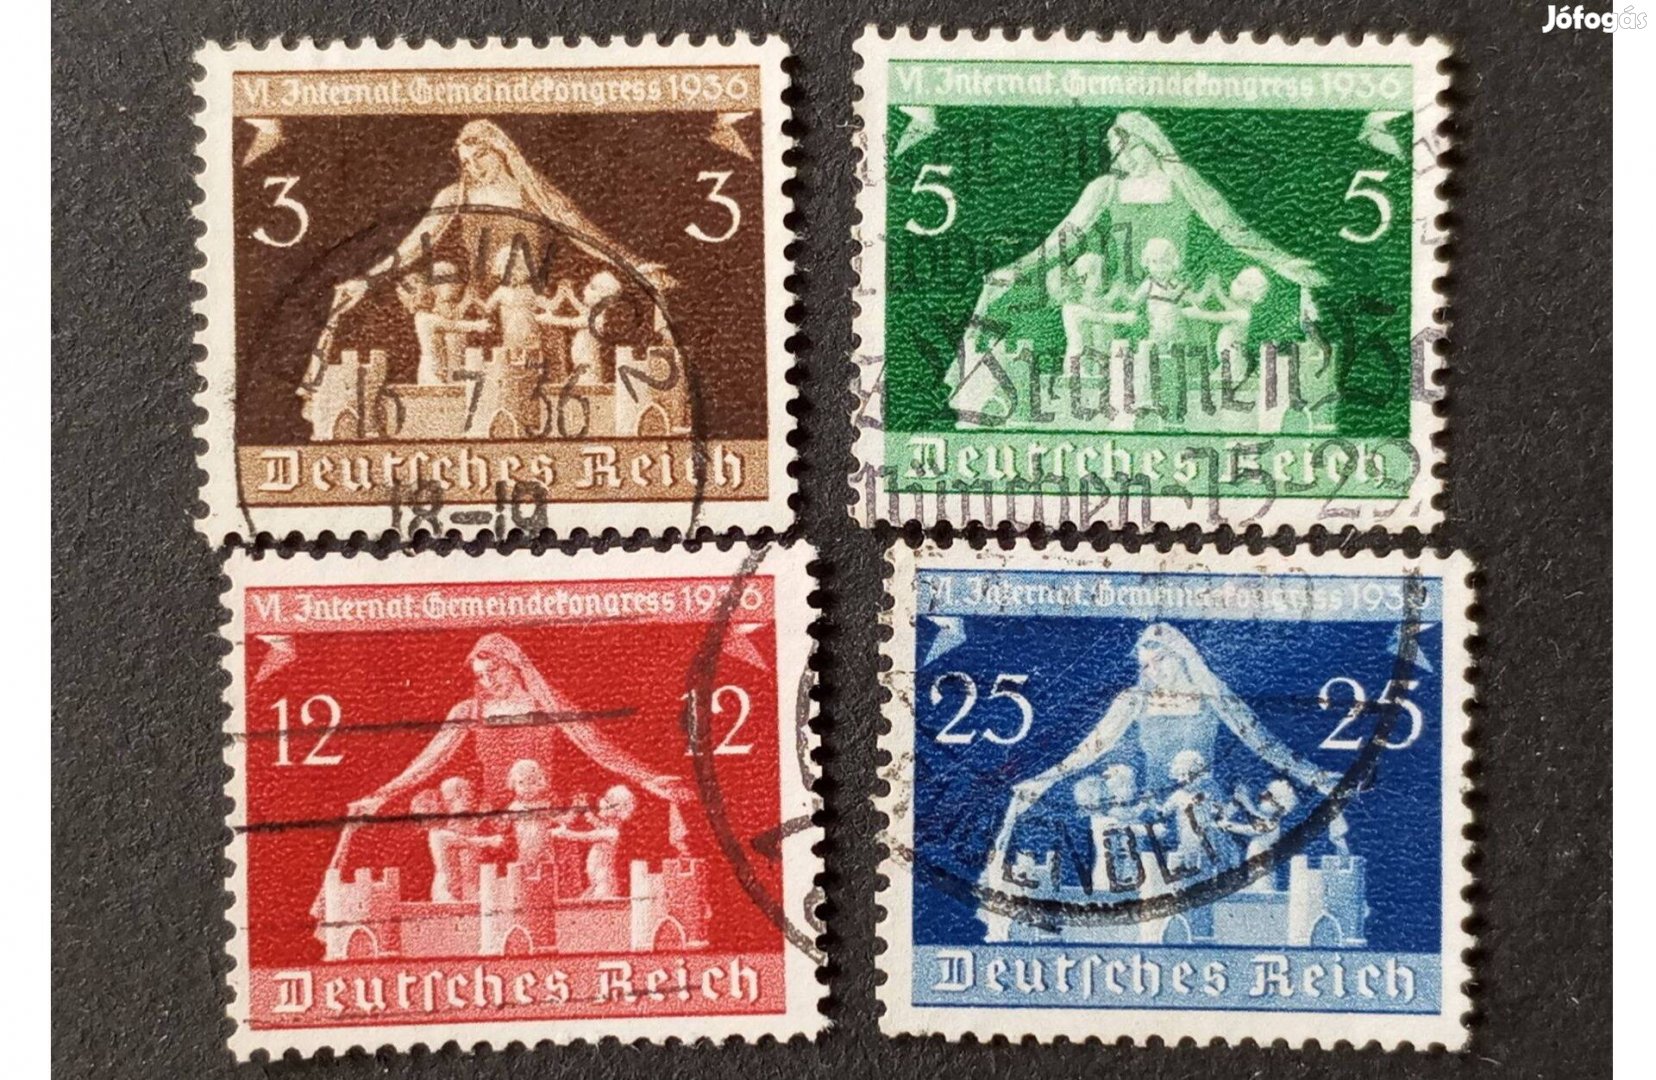 Deutsches Reich komplett bélyegsor 1936. évi Nemzetközi Önkormányzati